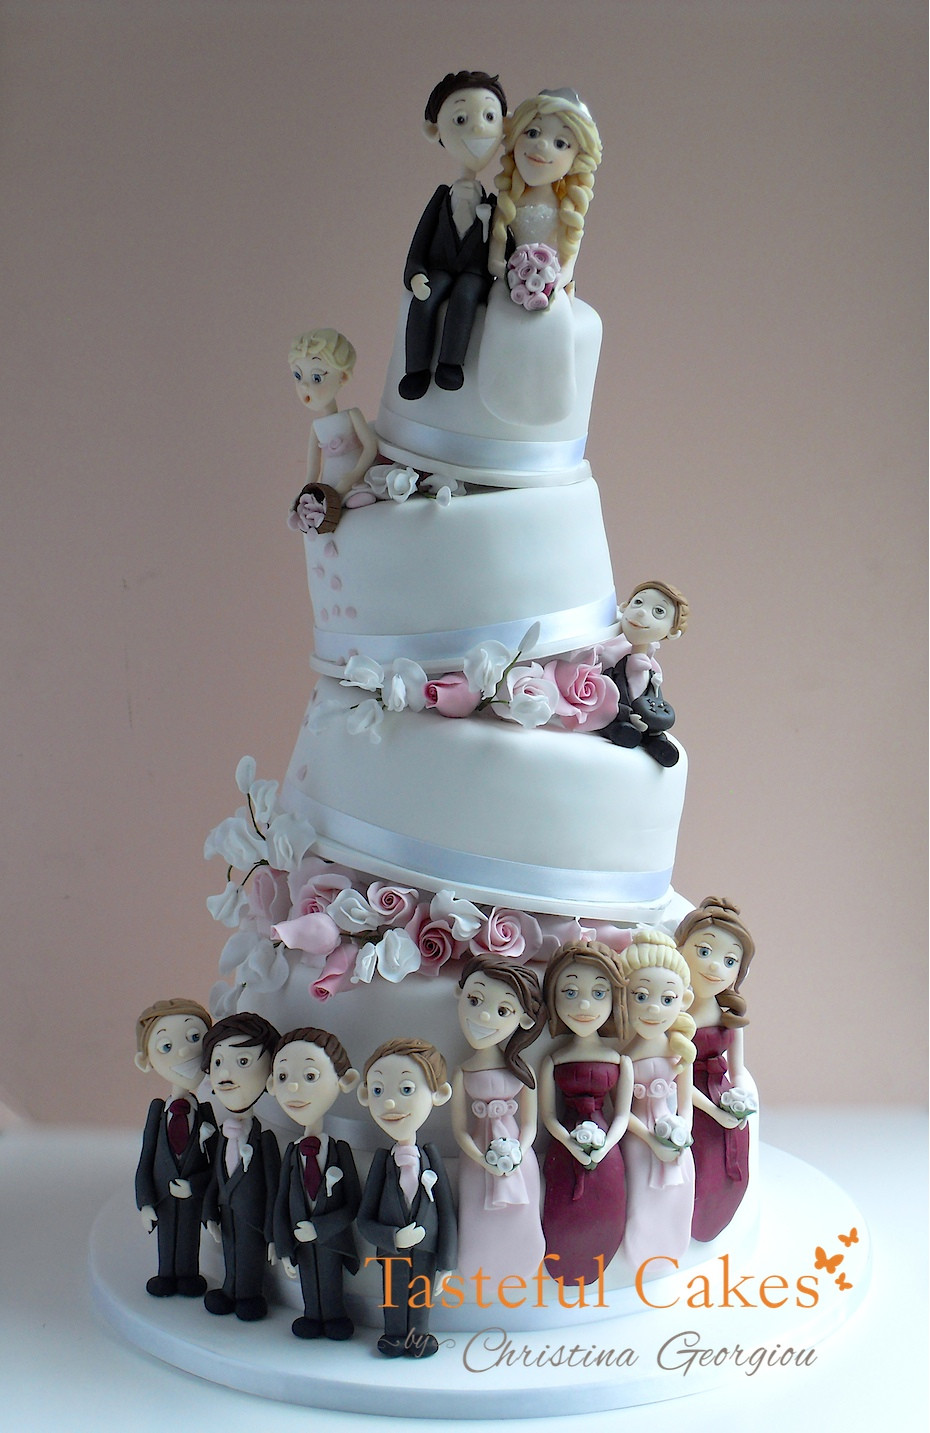 Fun Wedding Cakes
 Tasteful Cakes By Christina Georgiou